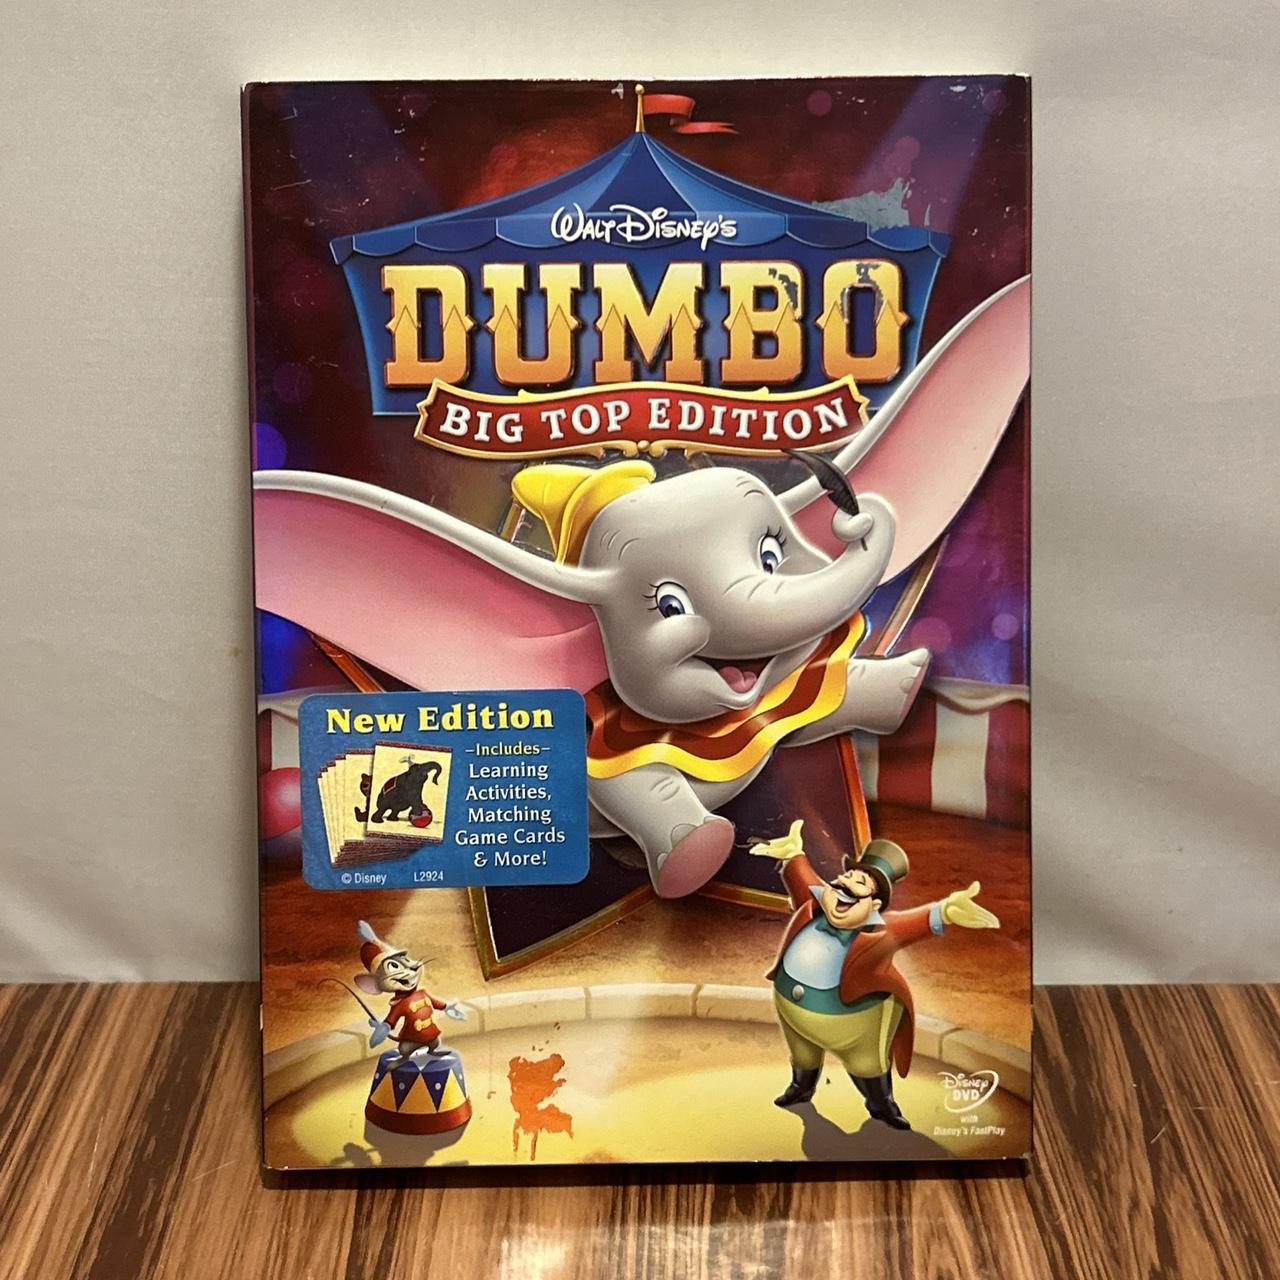 dumbo disney dvd